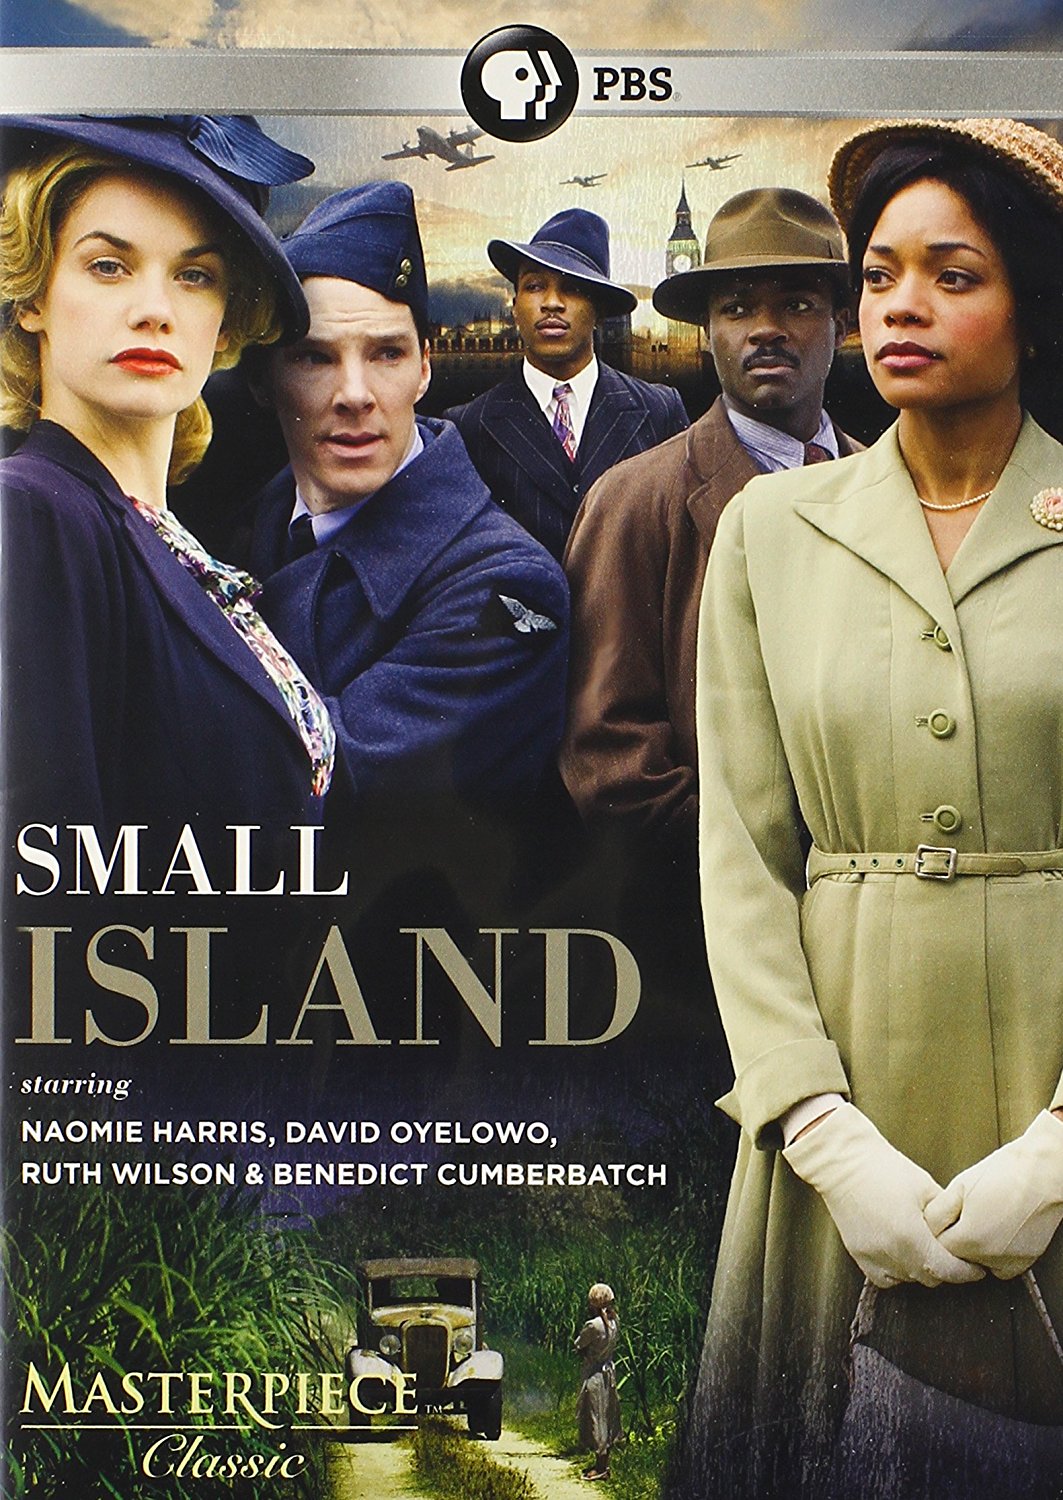 بندیکت کامبربچ در صحنه فیلم سینمایی Small Island به همراه دیوید اویلوو، نائومی هریس، Ashley Walters و Ruth Wilson